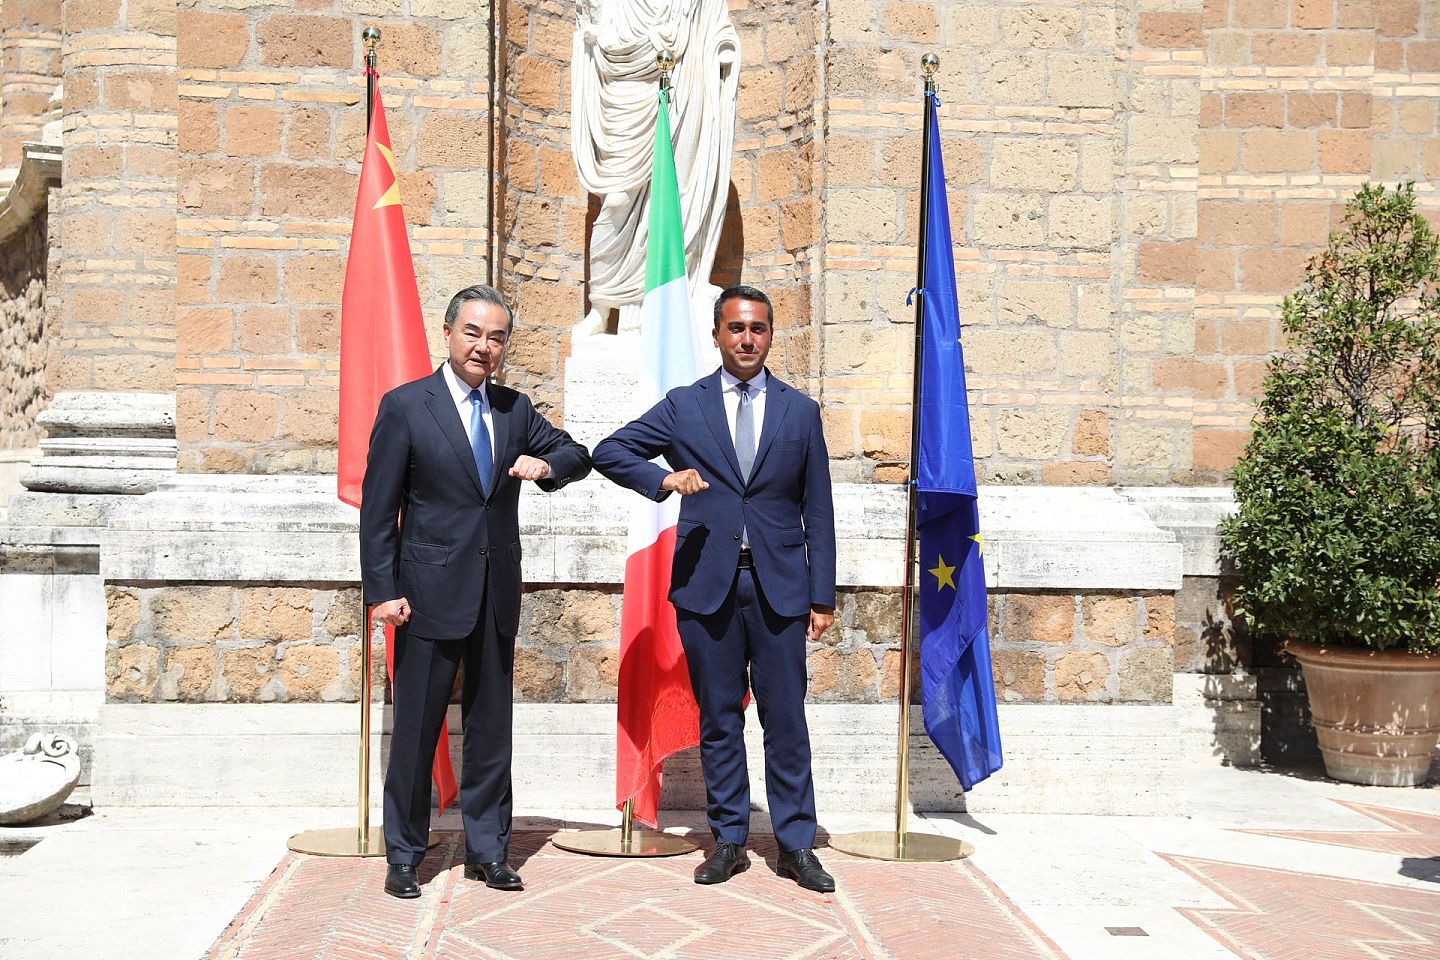 意大利是首个加入中国“一带一路”倡议的G7国家。在中国疫情发生之后，意大利曾援助中国，而意大利爆发疫情后，中国也对意大利施以援手。如今，王毅首访欧洲首站为意大利。中国与意大利的关系在逐步升温。图为8月25日，在意大利罗马，王毅（左）与意大利外长迪马约在会谈前碰肘留影。（新华社）